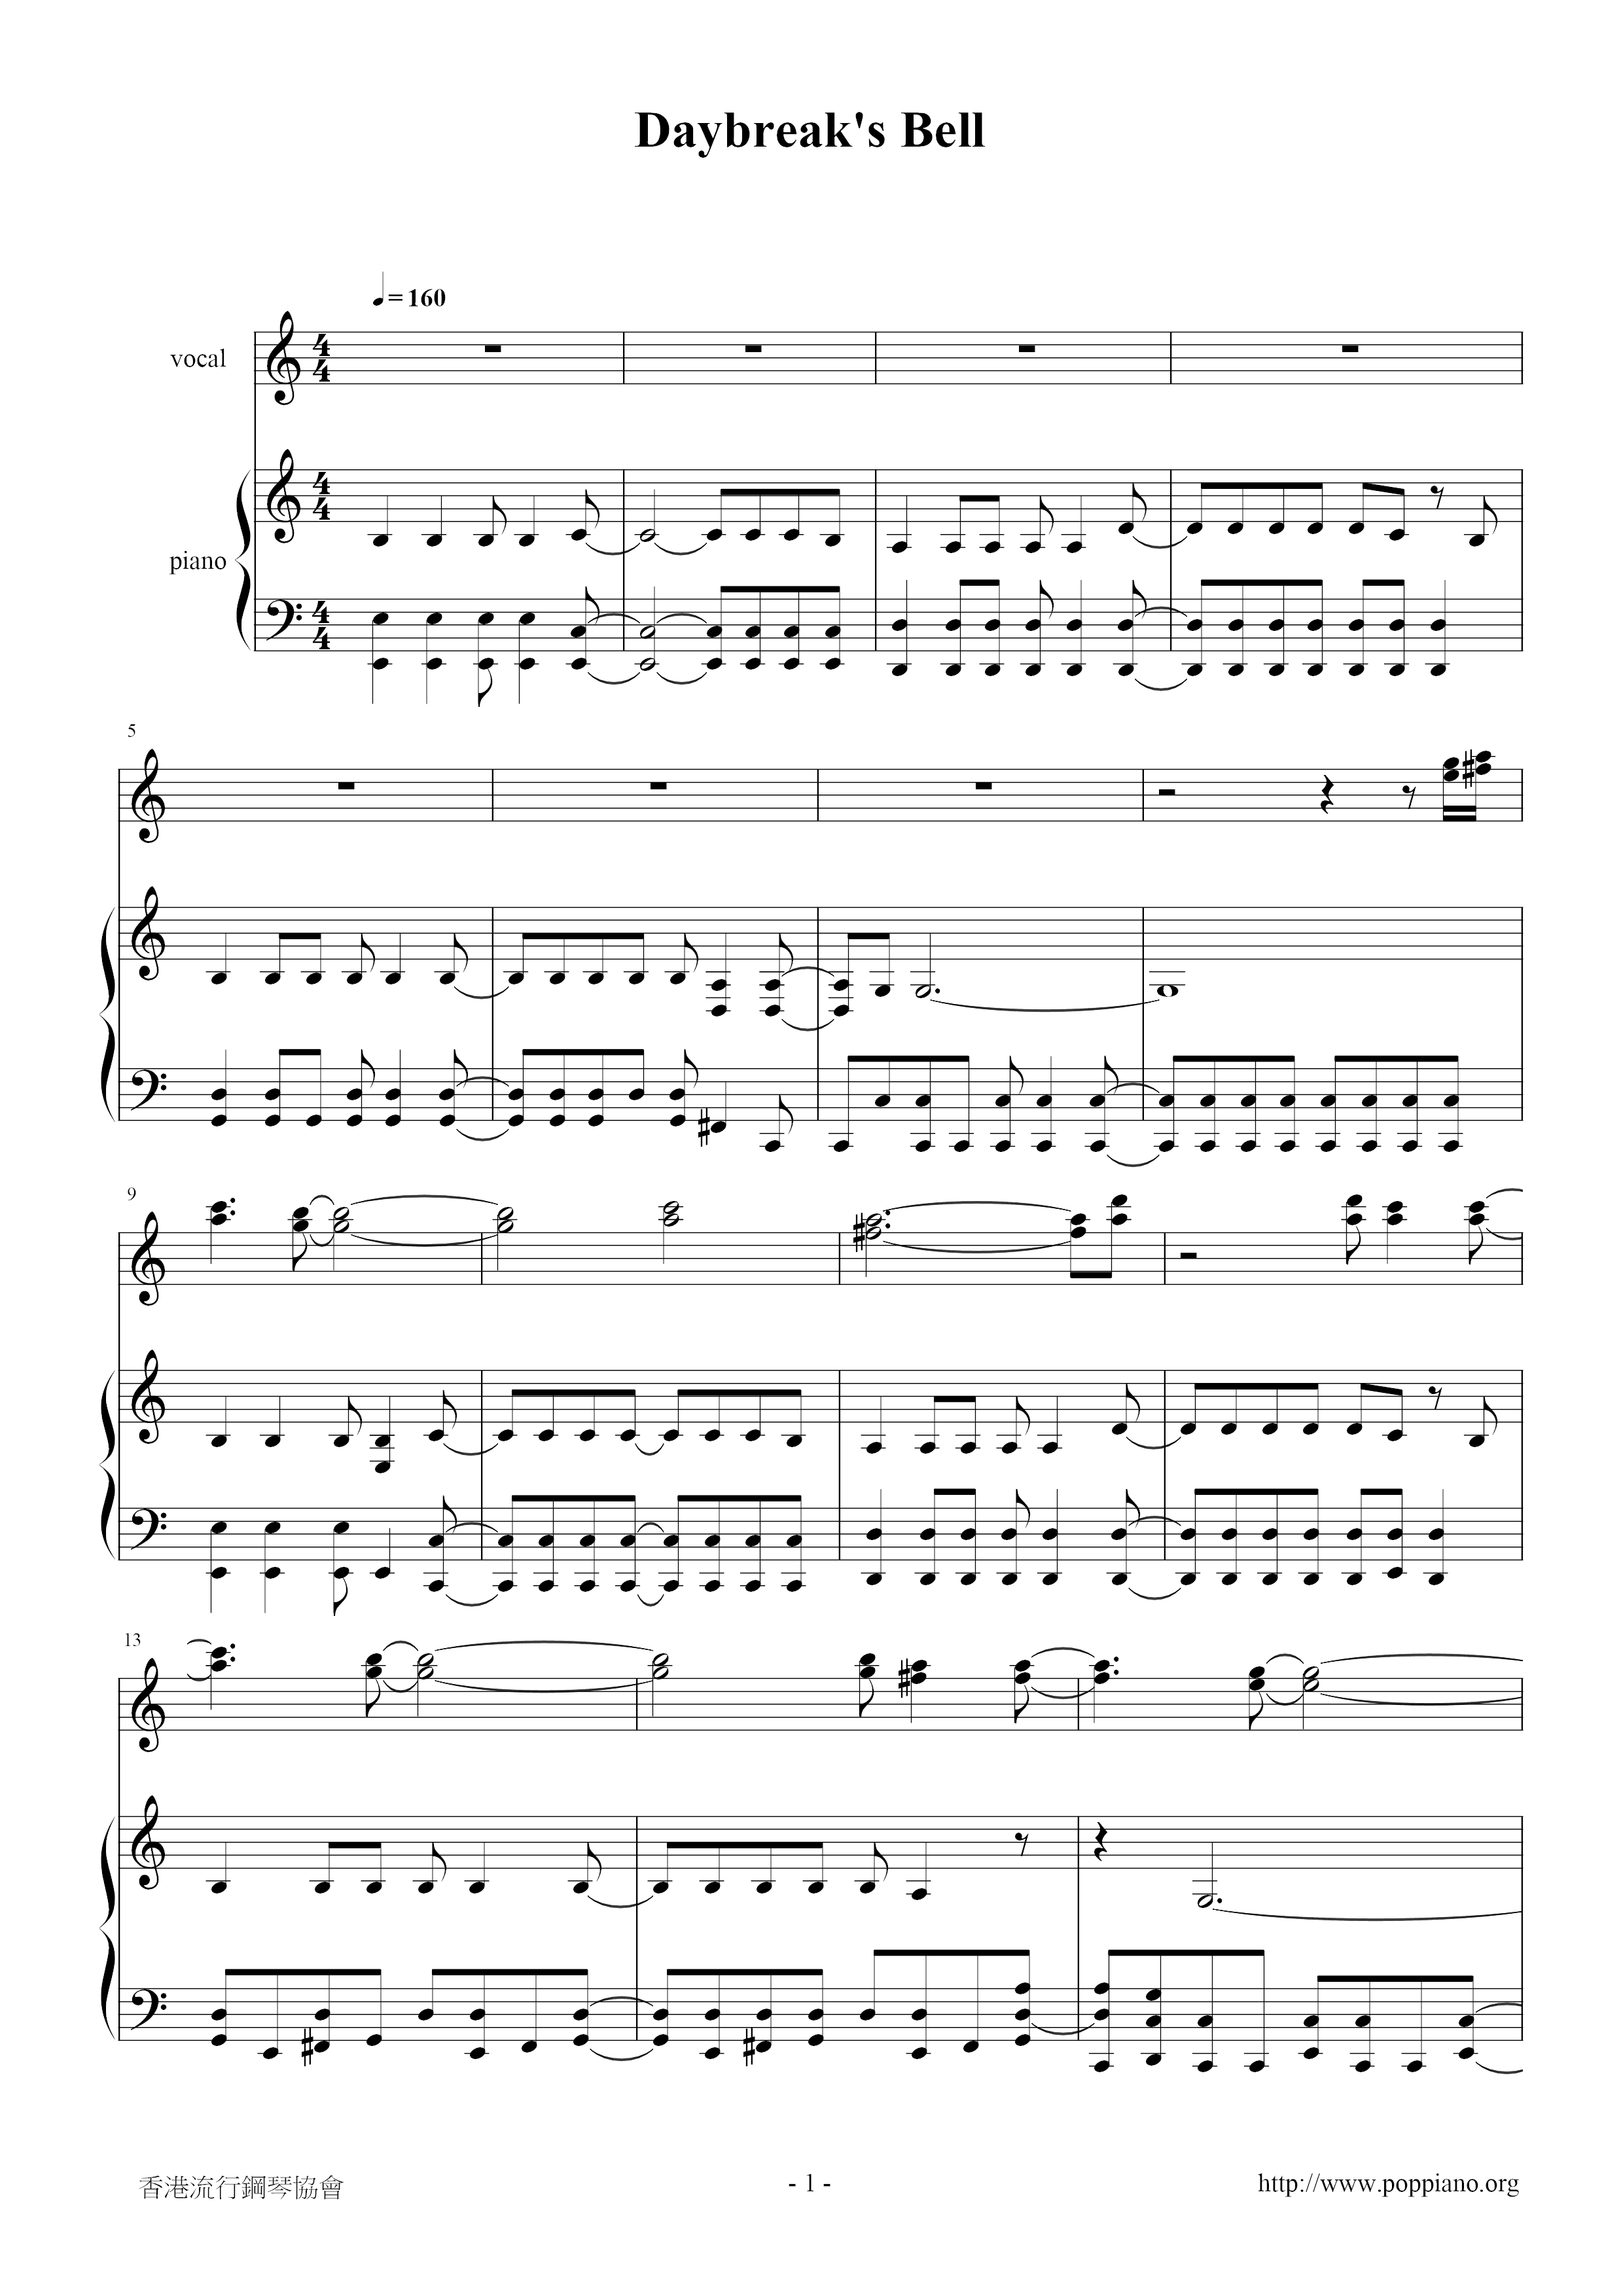 Daybreak's Bell Score